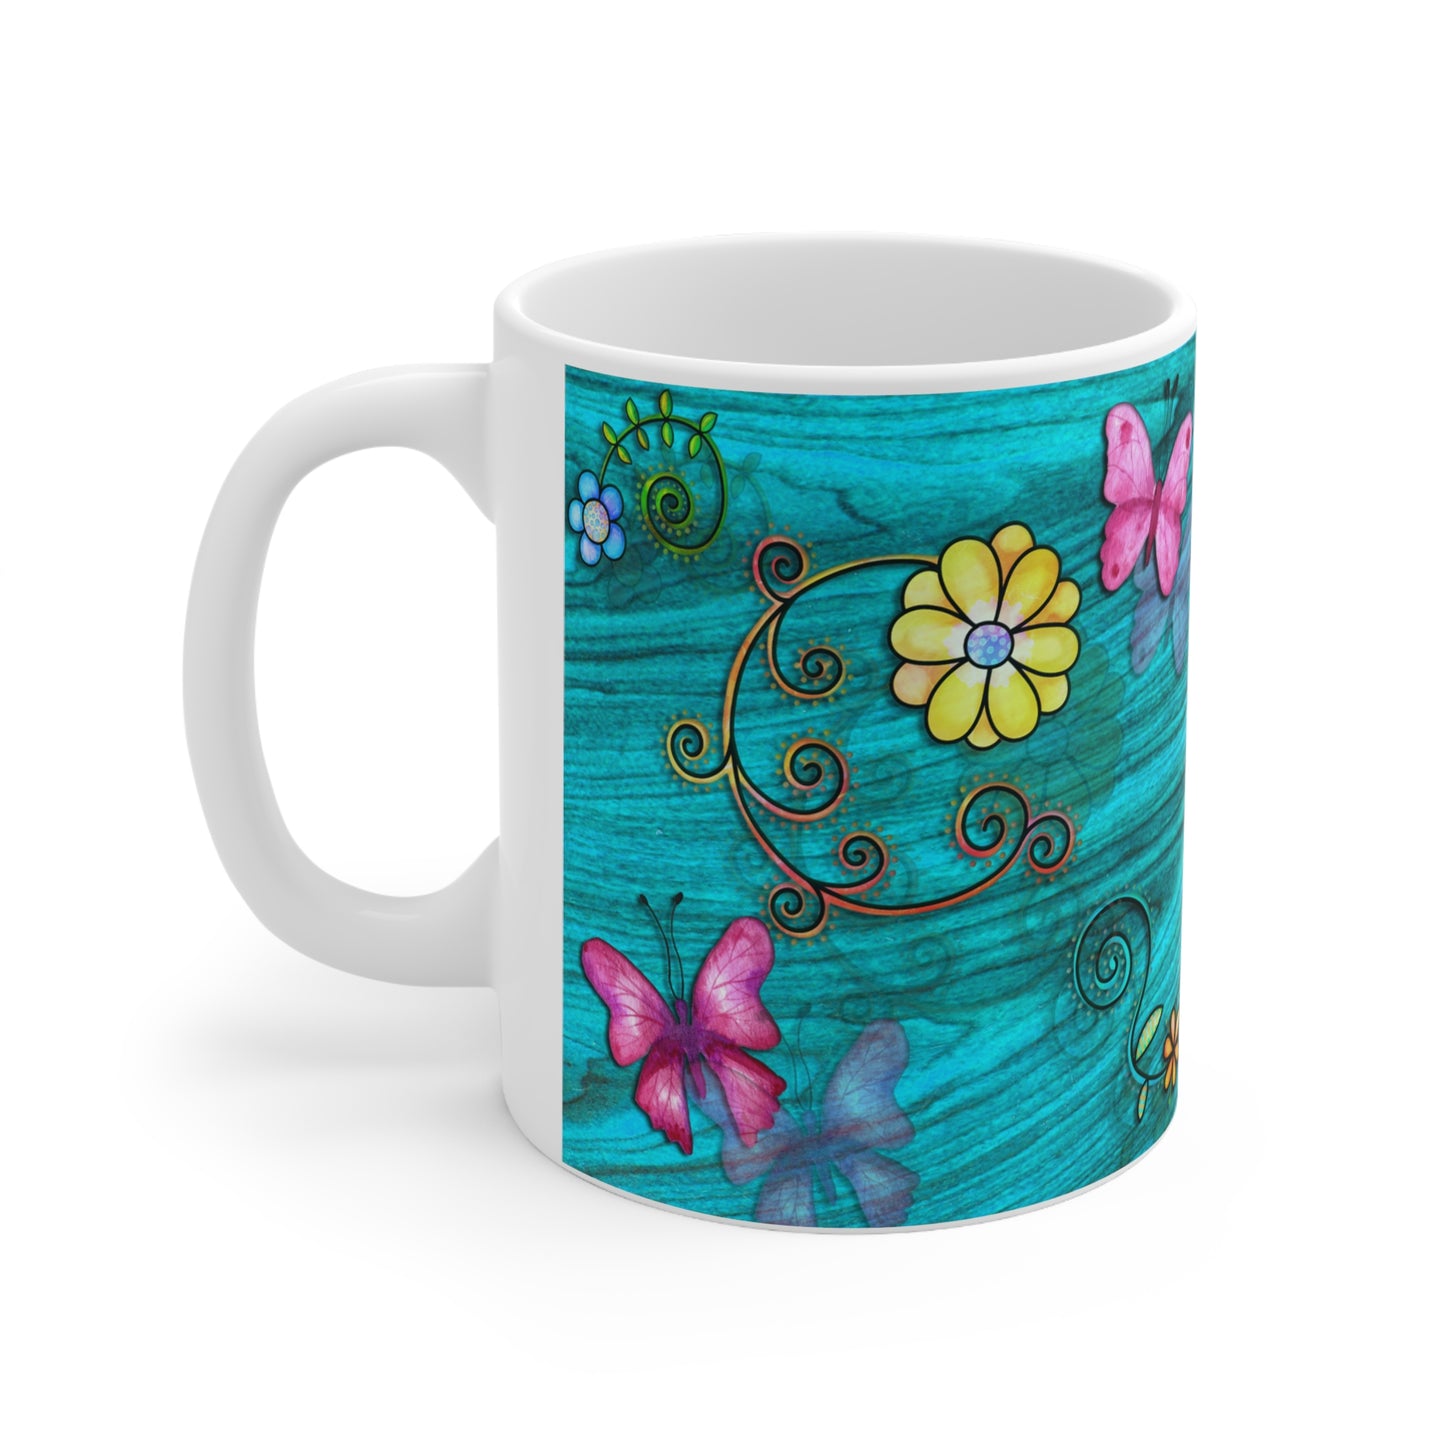 Pink Butterflies w/ Flowers & Teal Wood Grain Background Ceramic Mug 11oz